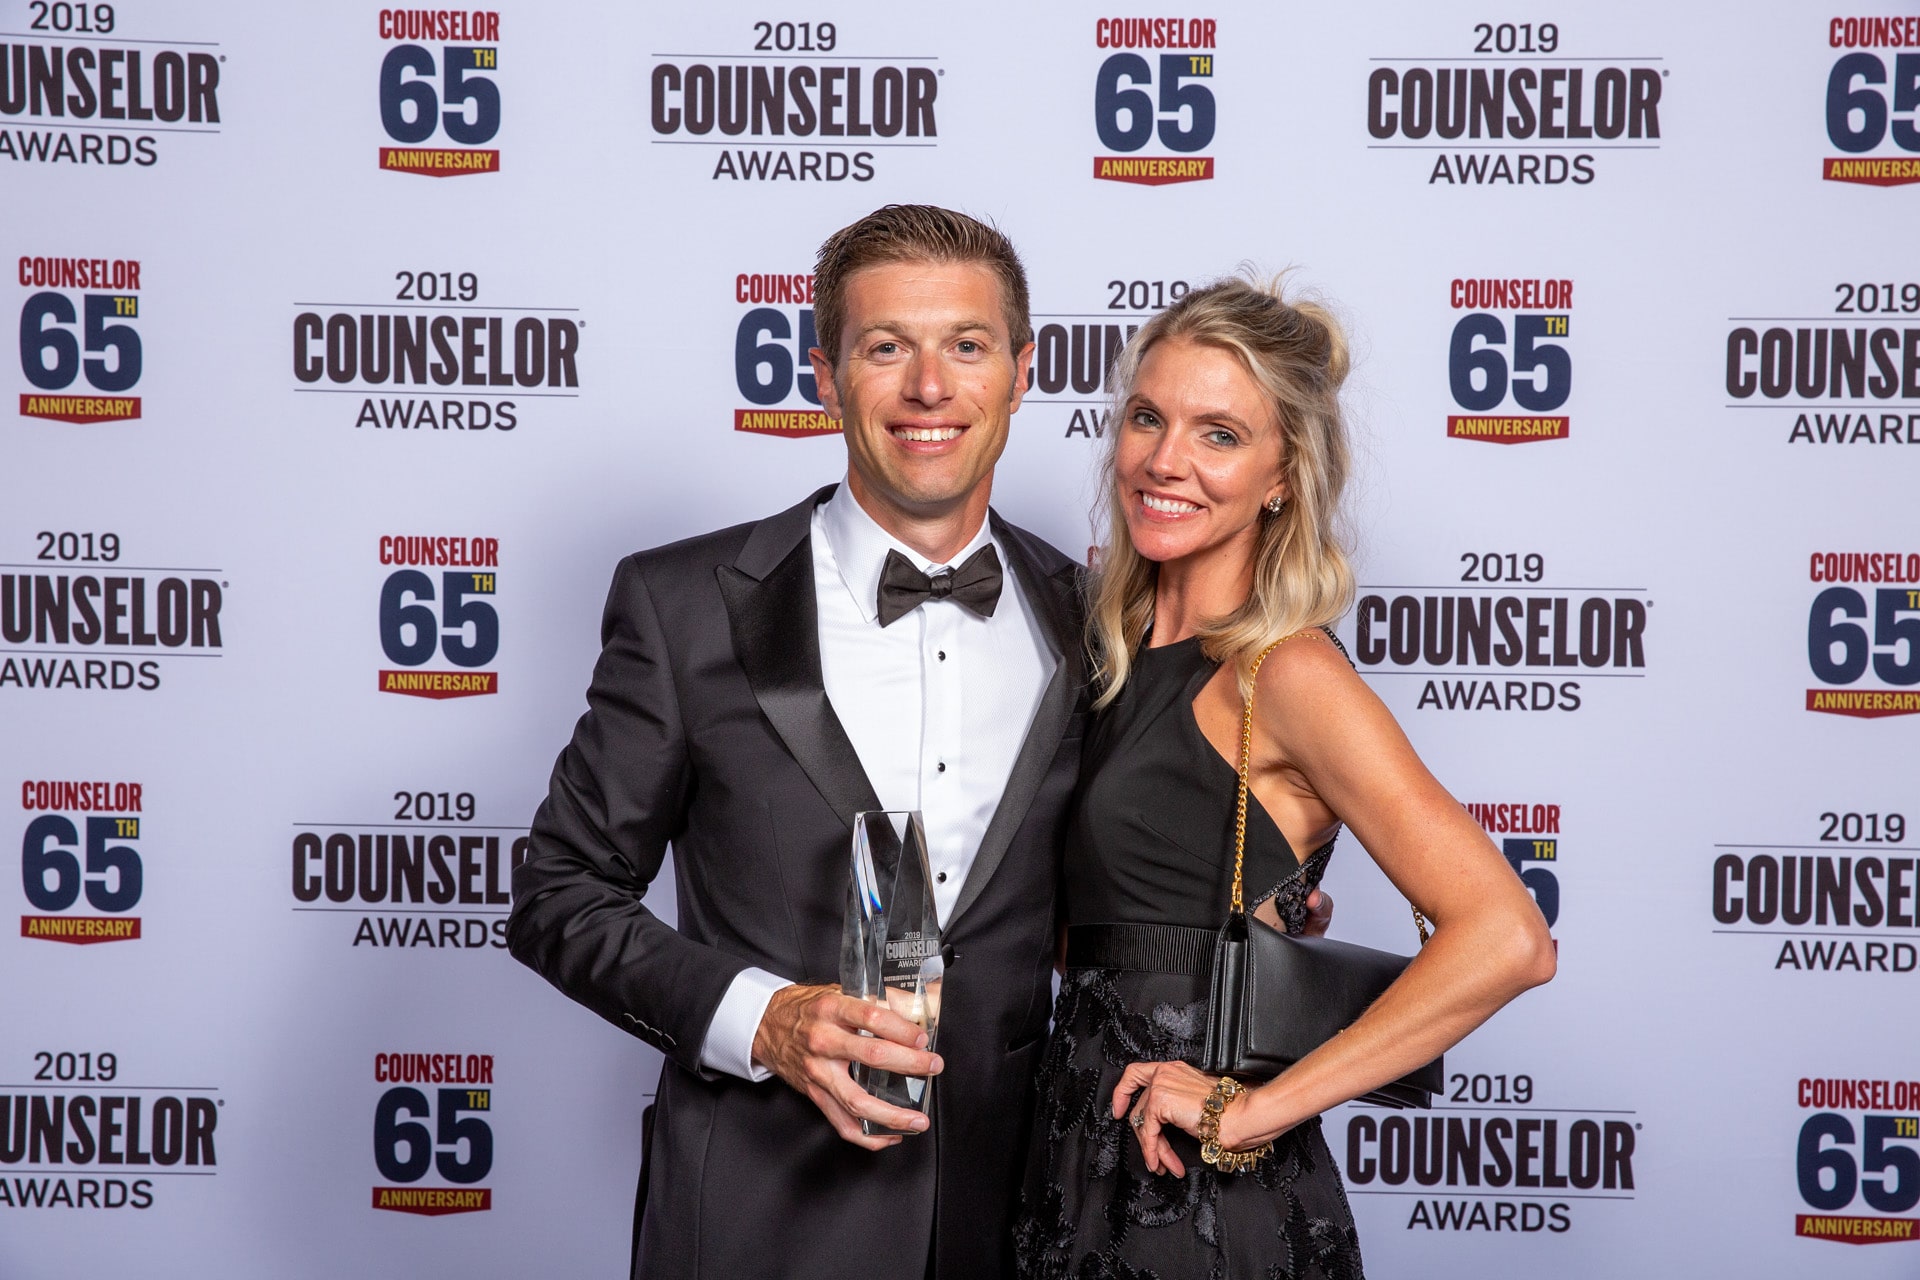 John Henry and Tara Henry at 2019 Counselor Awards